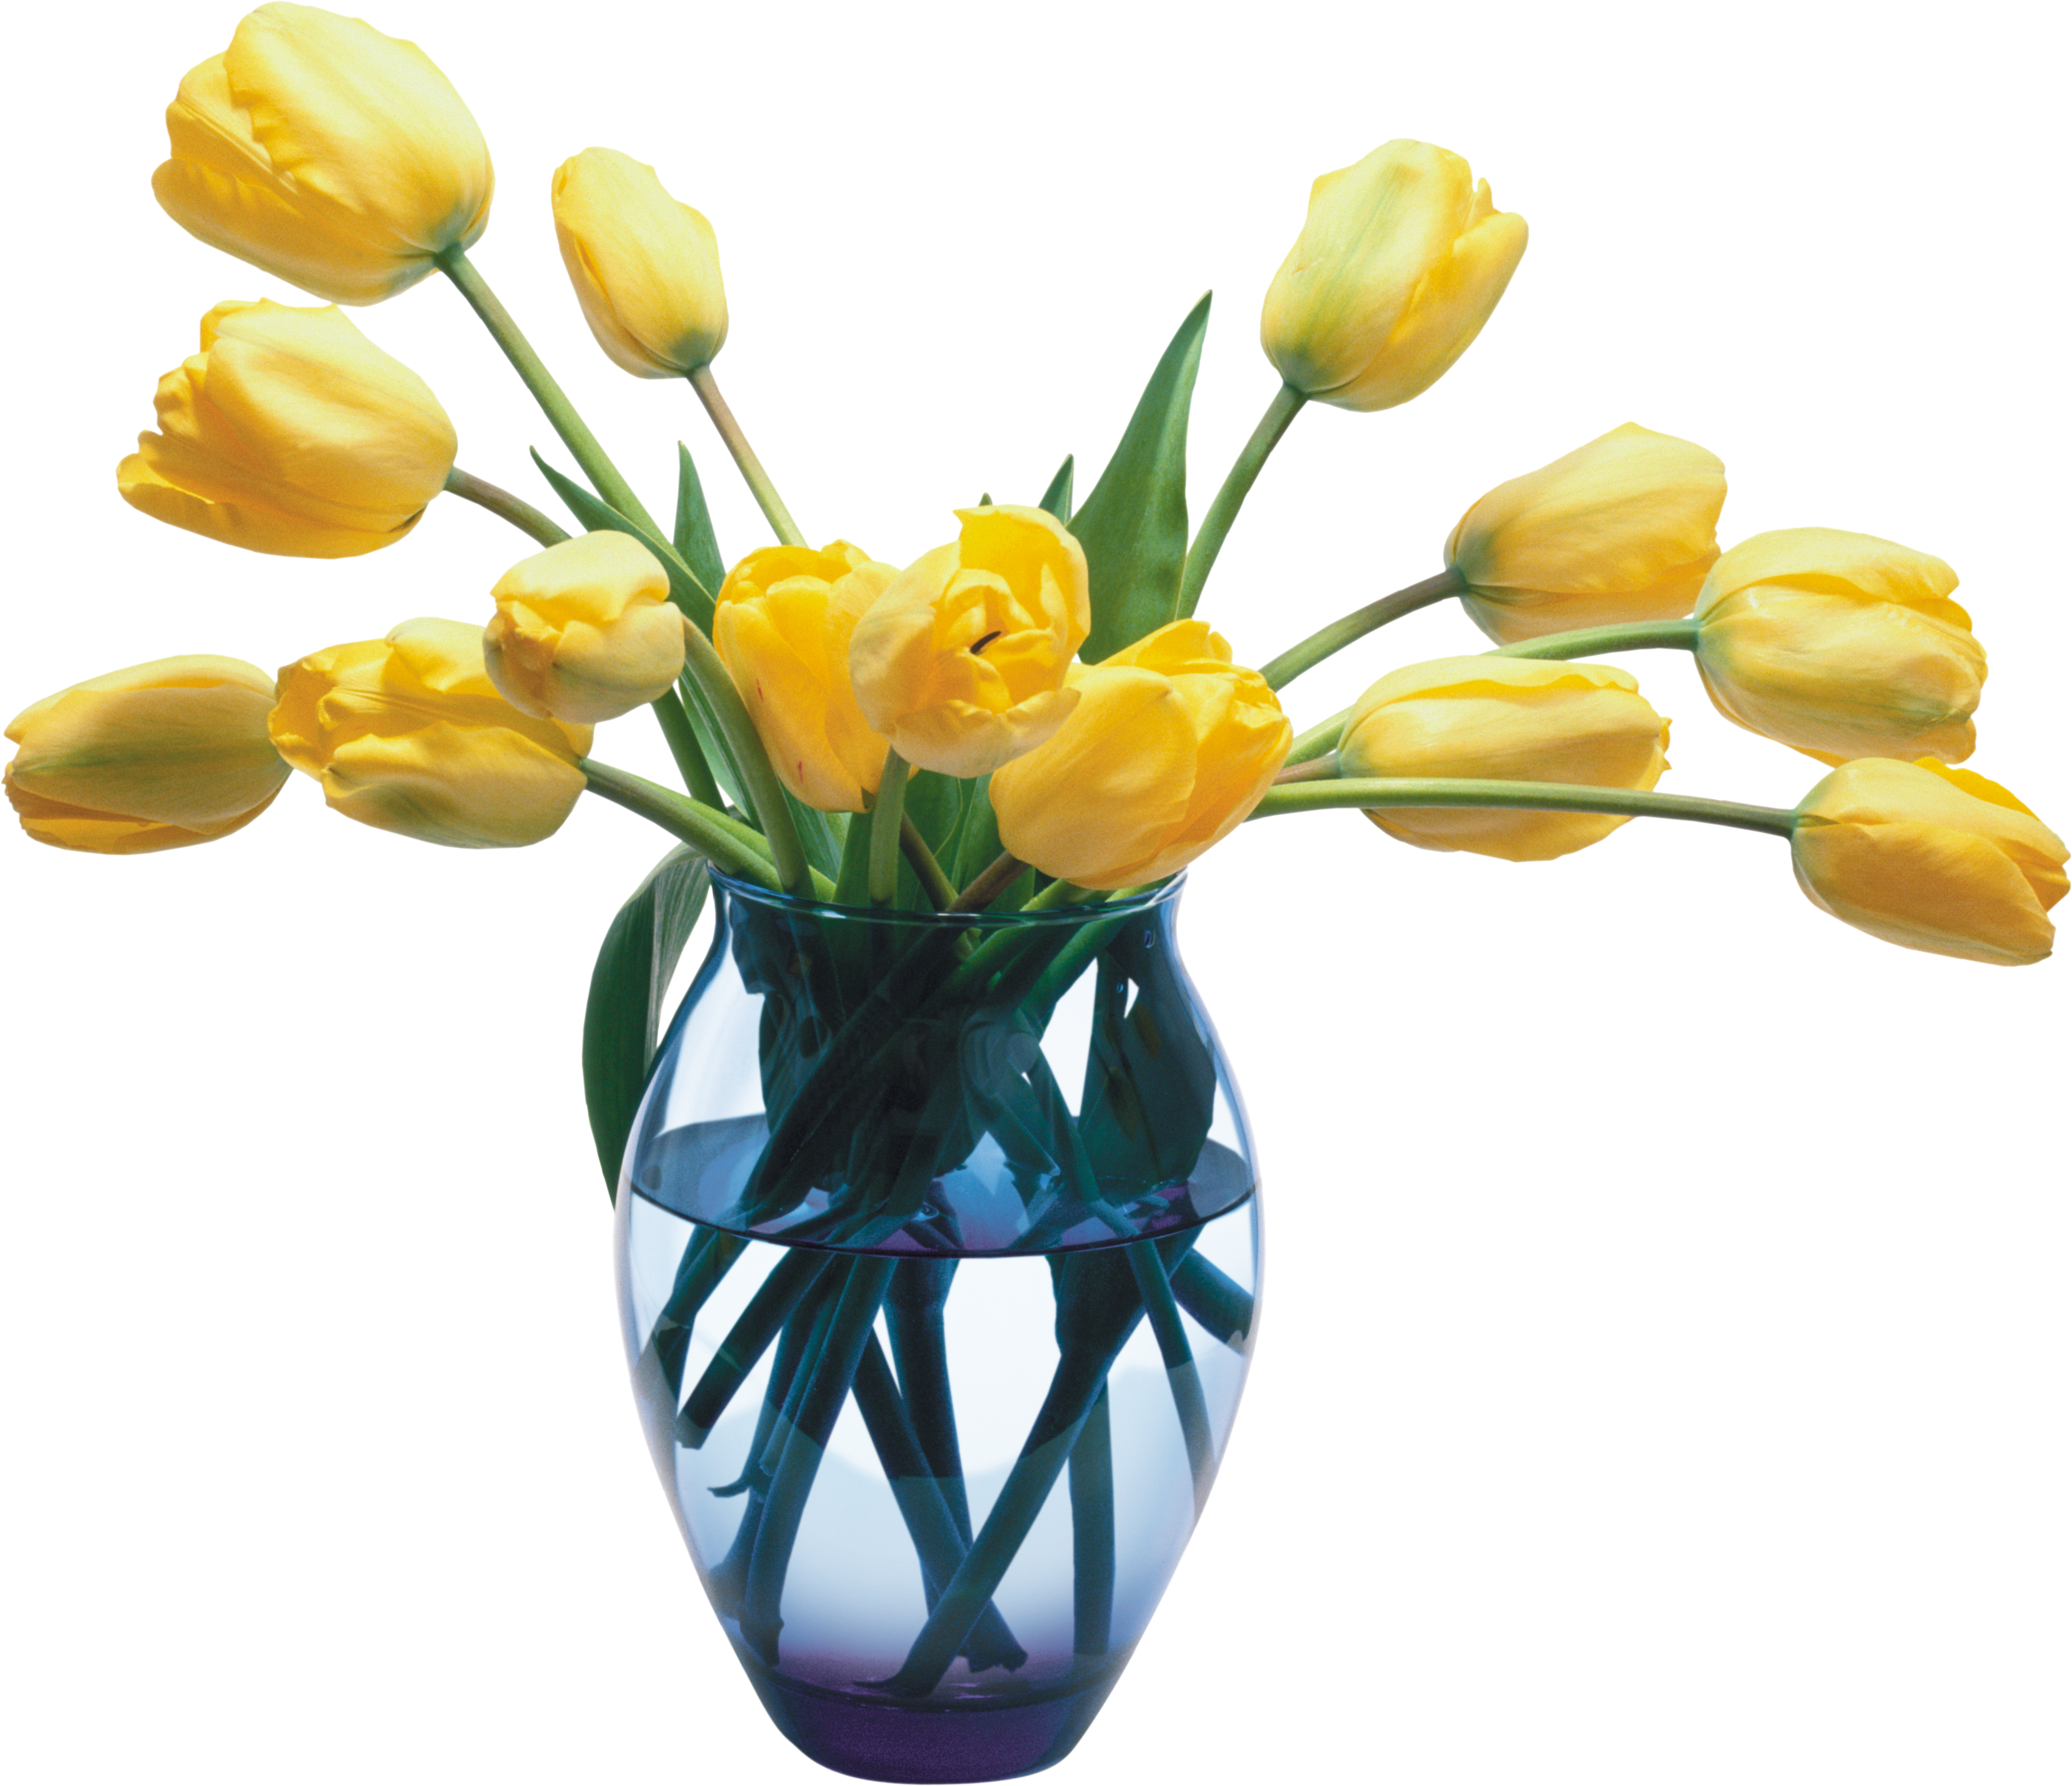 Vase PNG images free download.